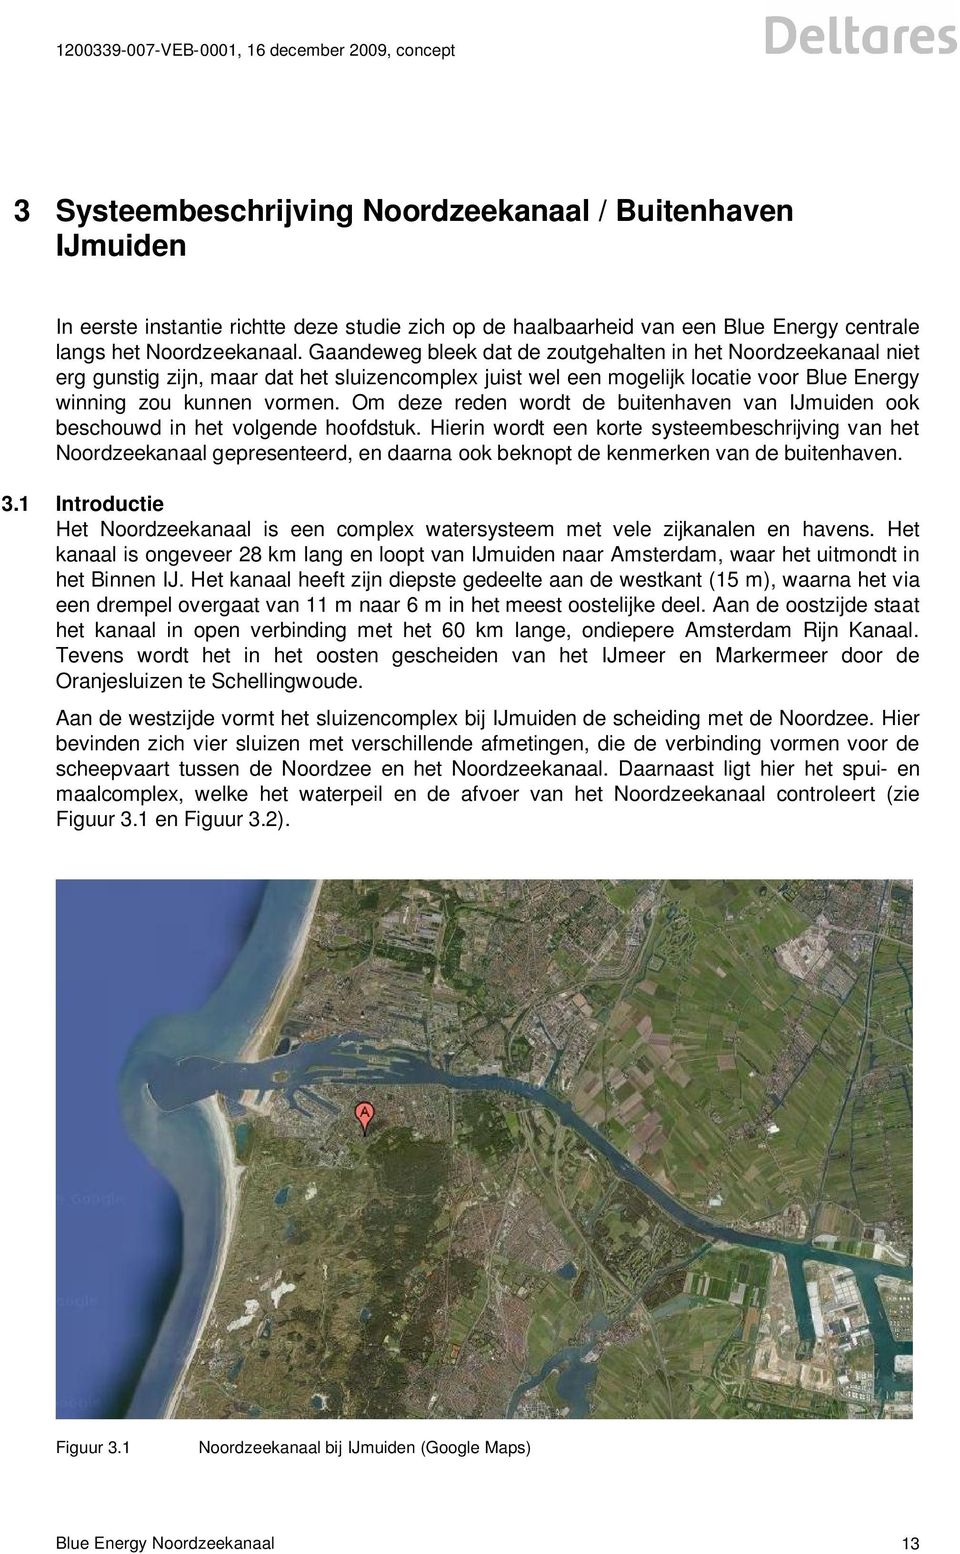 Om deze reden wordt de buitenhaven van IJmuiden ook beschouwd in het volgende hoofdstuk.